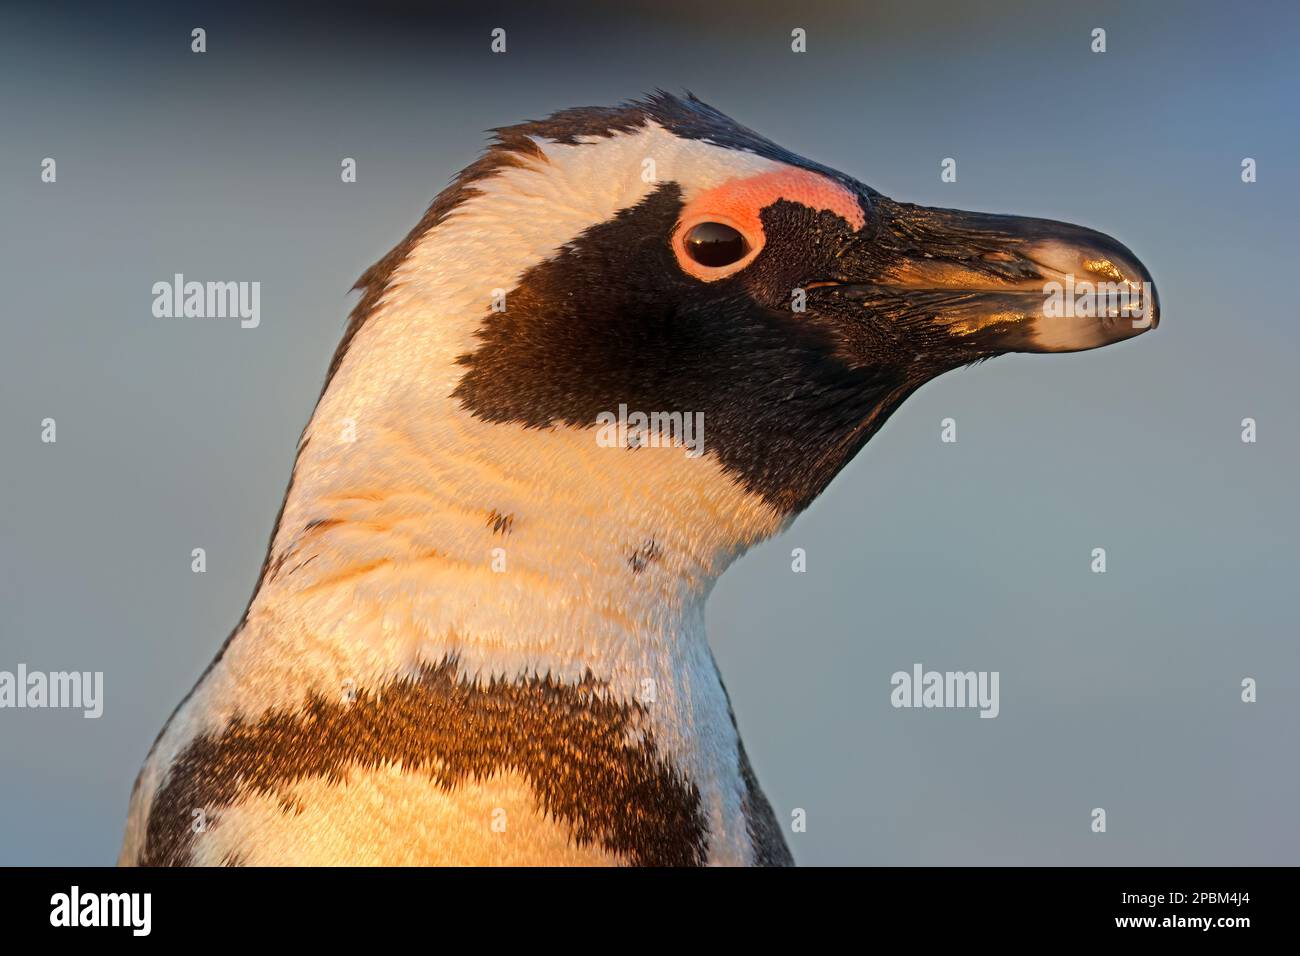 Retrato de un pingüino africano en peligro de extinción (Spheniscus demersus), Sudáfrica Foto de stock